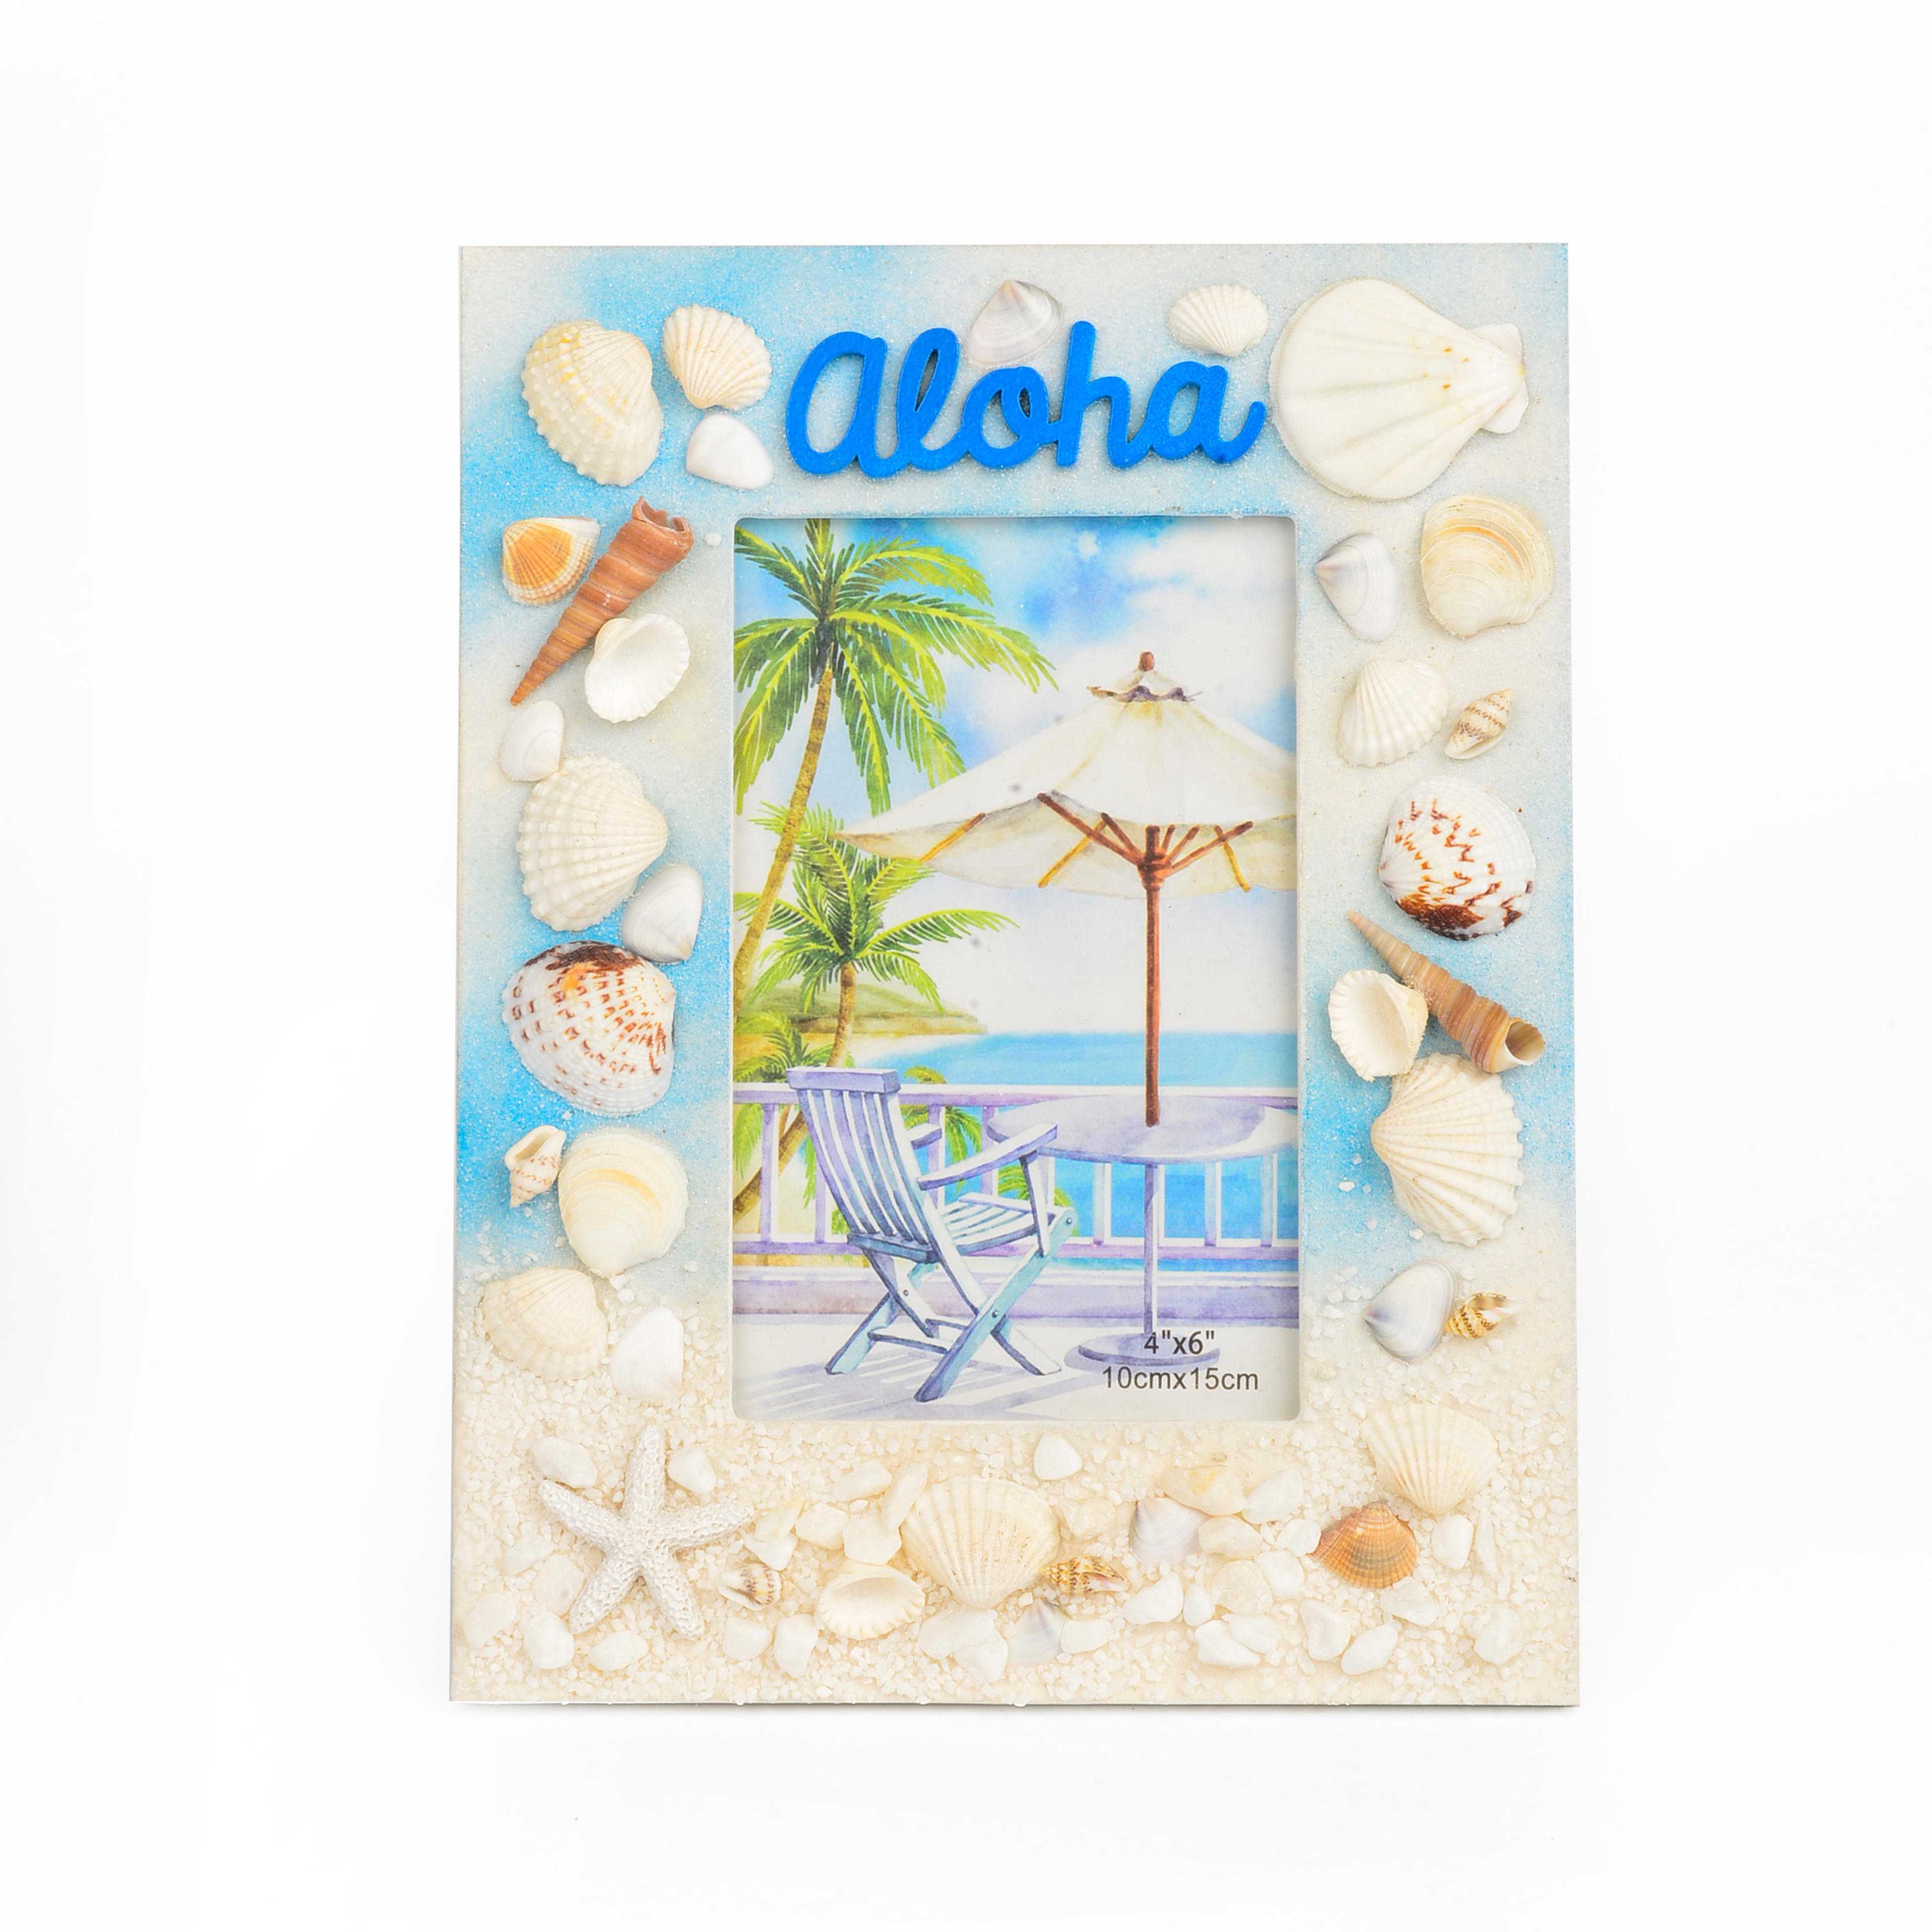 丽飞海洋系列旅游创意工艺品海滩贝壳海螺珊瑚工艺相框0004